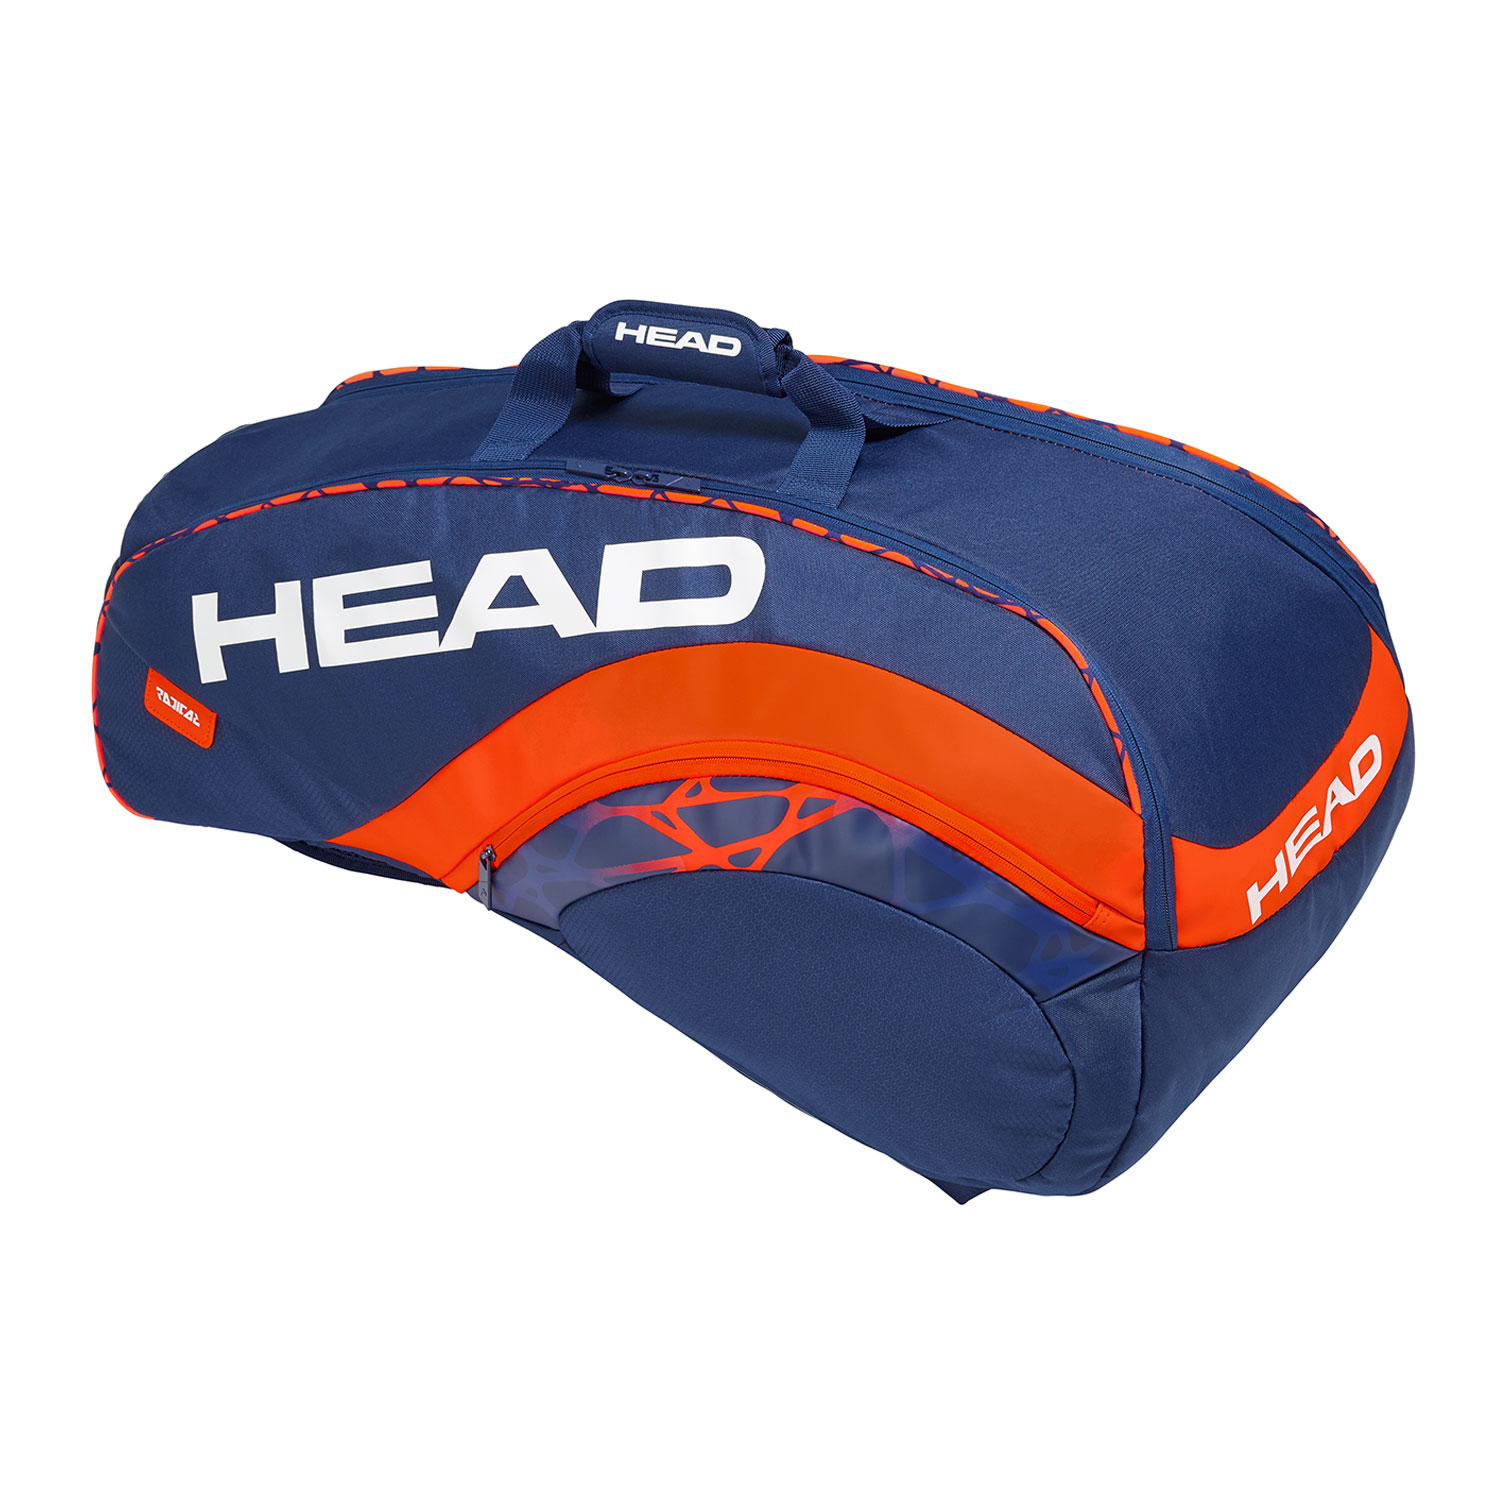 Теннисная сумка HEAD RADICAL 9R SUPERCOMBI BLOR